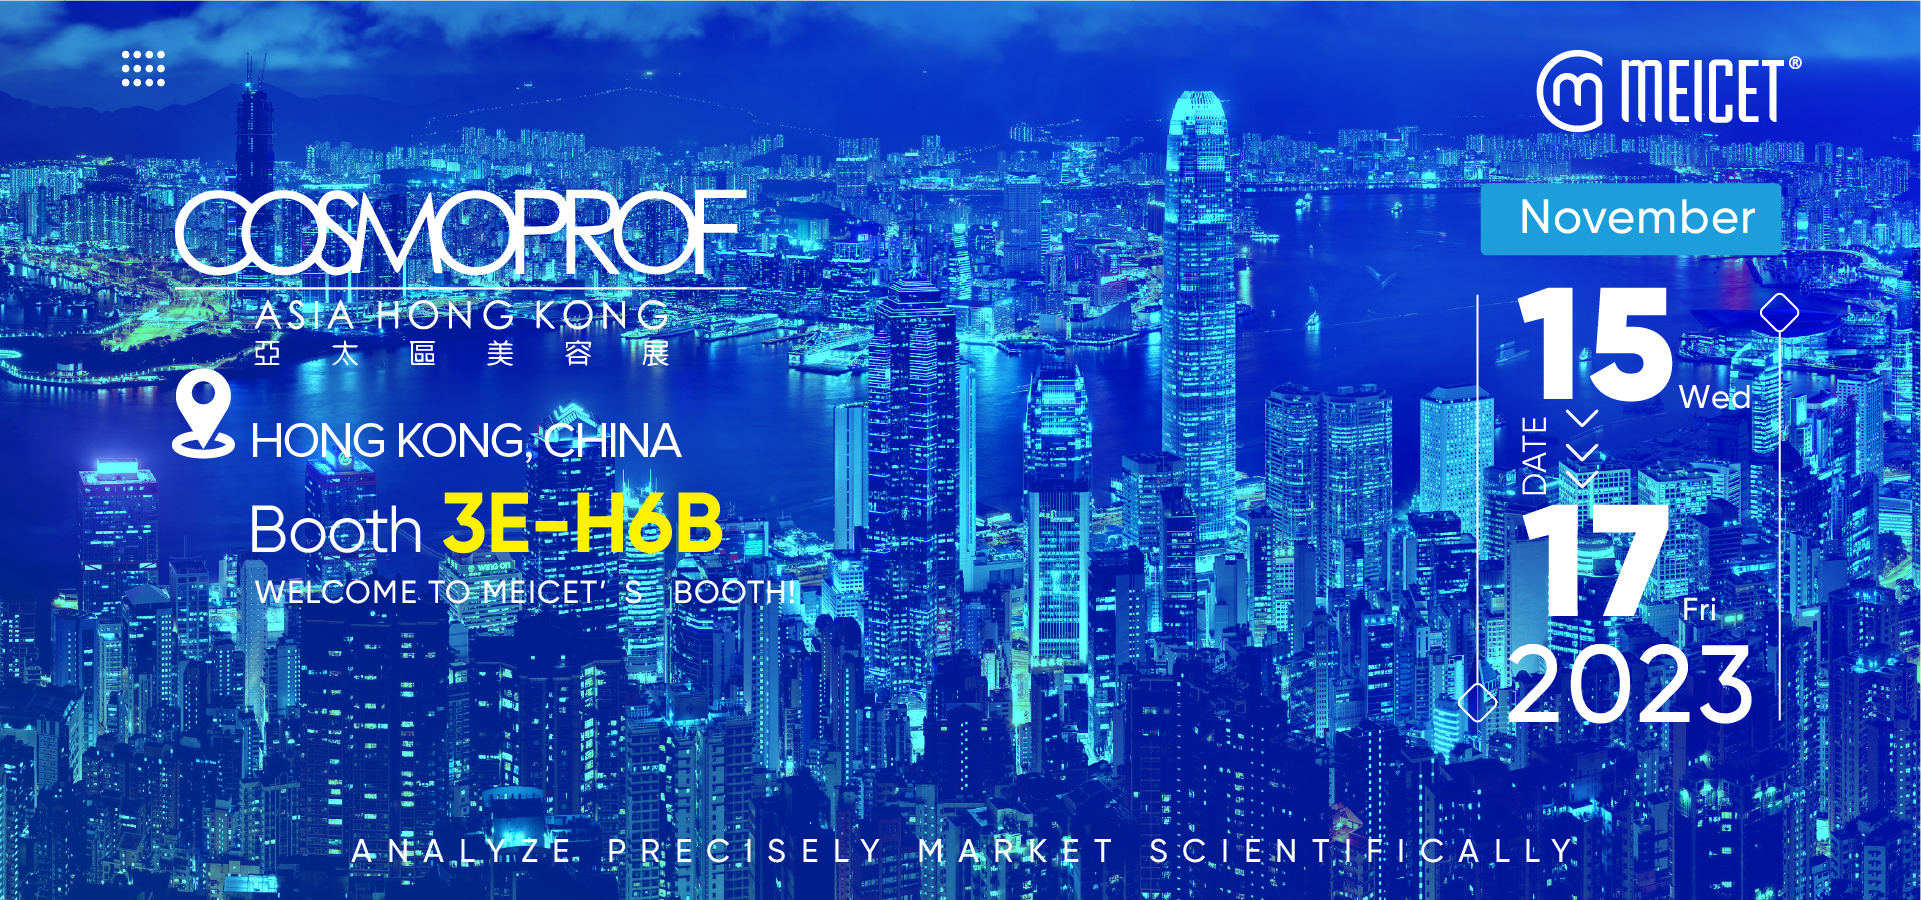 MEICET hudanalysemaskin for å vise frem bestselgende enheter på COSMOPROF Asia i Hong Kong